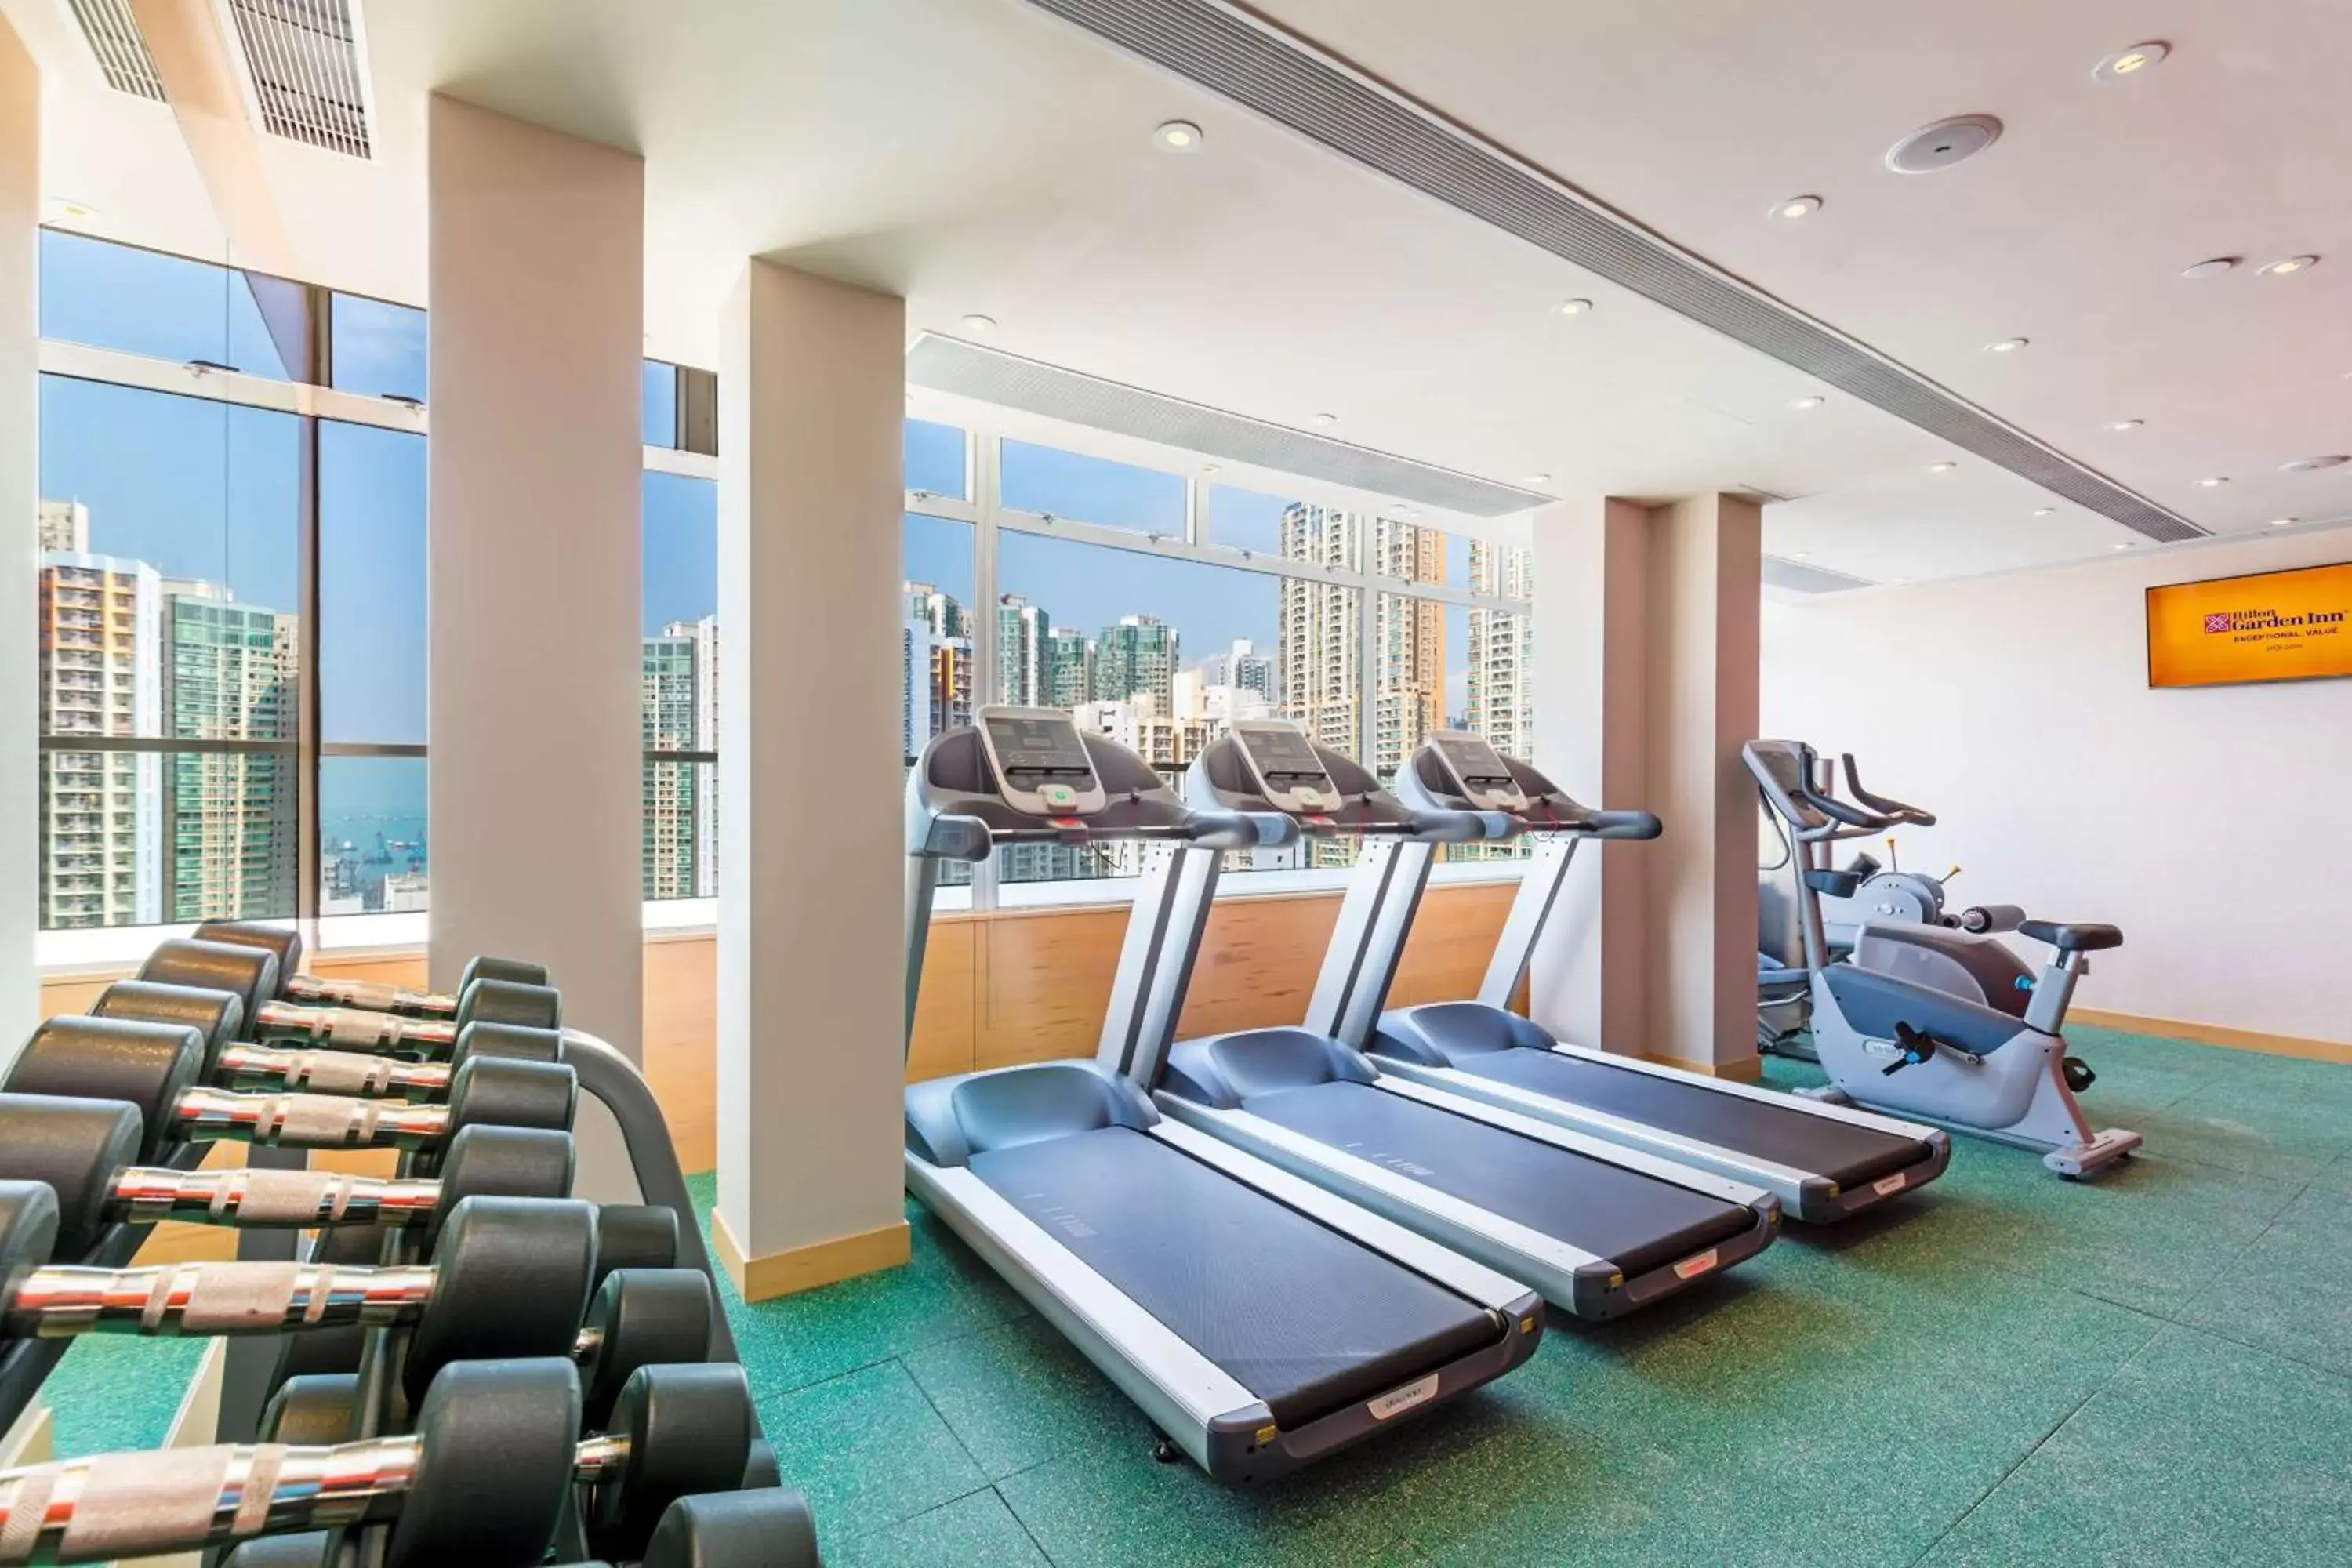 Fitness centre/facilities, Fitness Center/Facilities in Hilton Garden Inn Hong Kong Mongkok